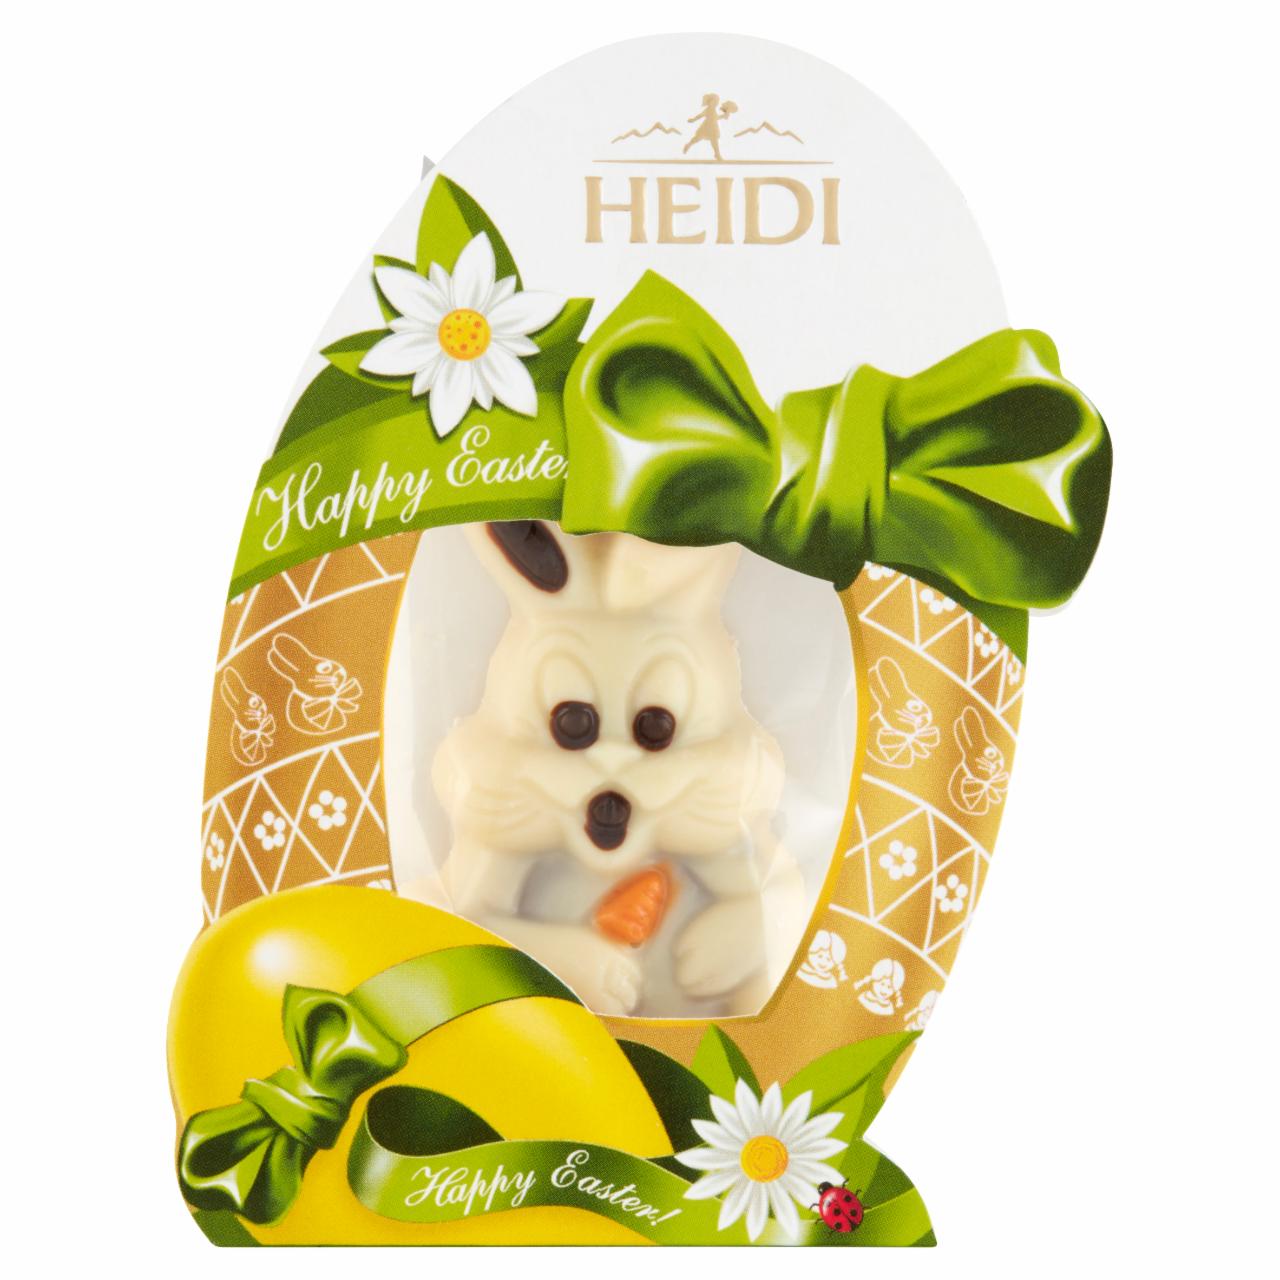 Képek - Heidi fehér csokoládé figura praliné töltelékkel 20 g